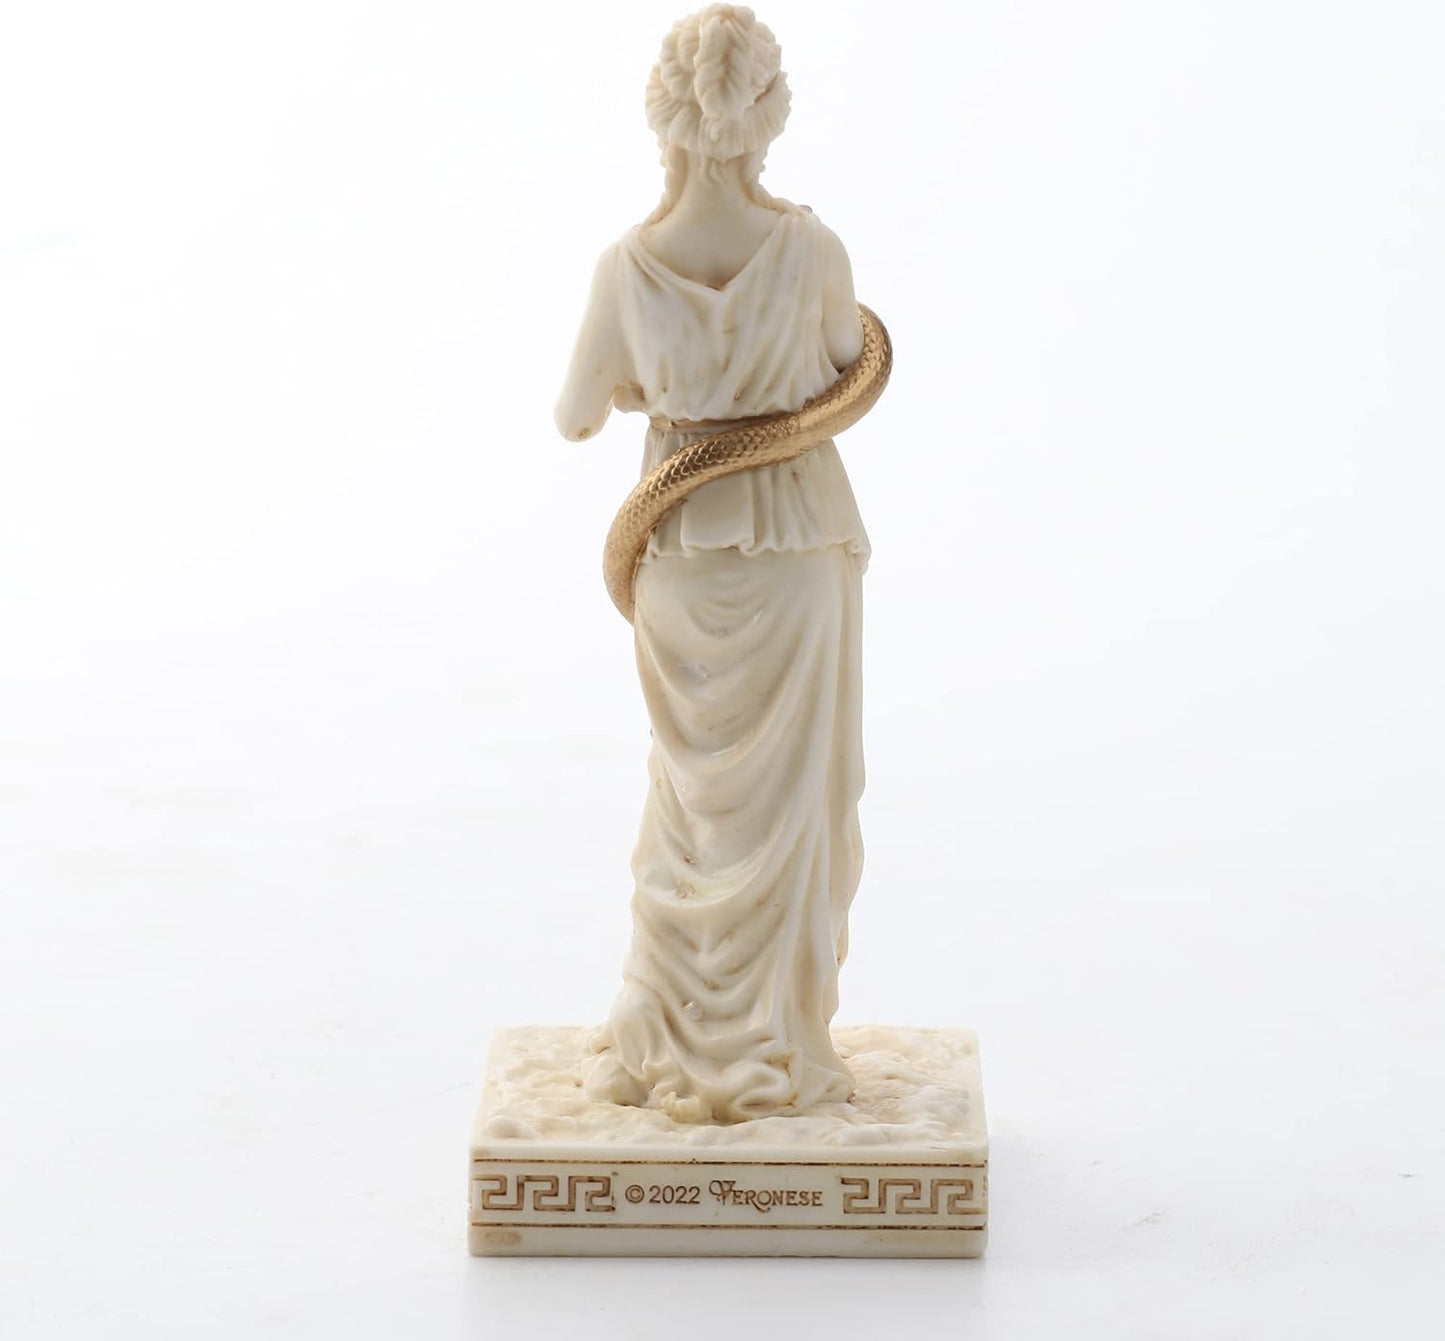 Hygieia Greek Gods Miniature Figurine